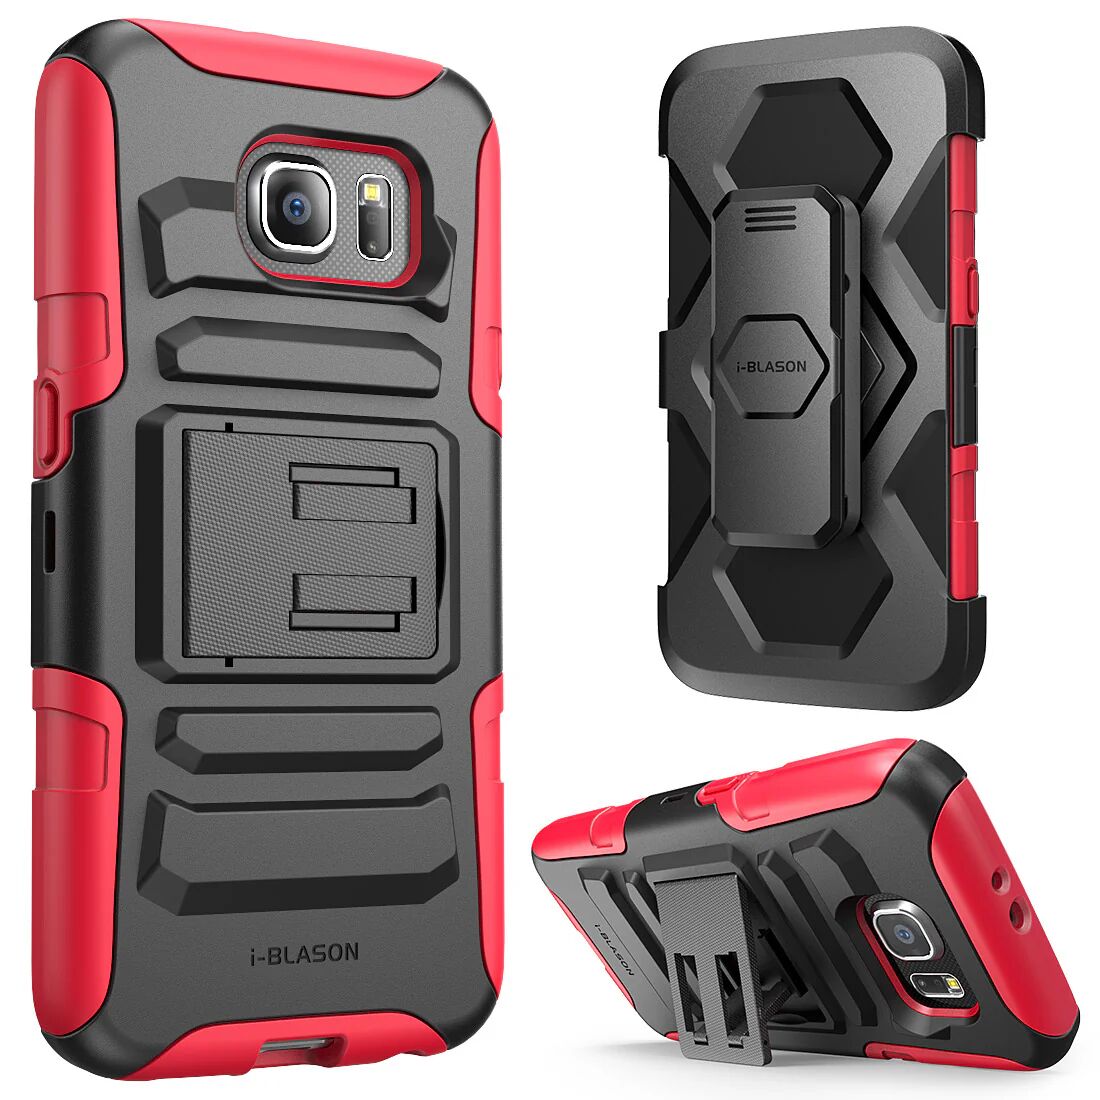 i-Blason Galaxy S6 Prime Case - Red